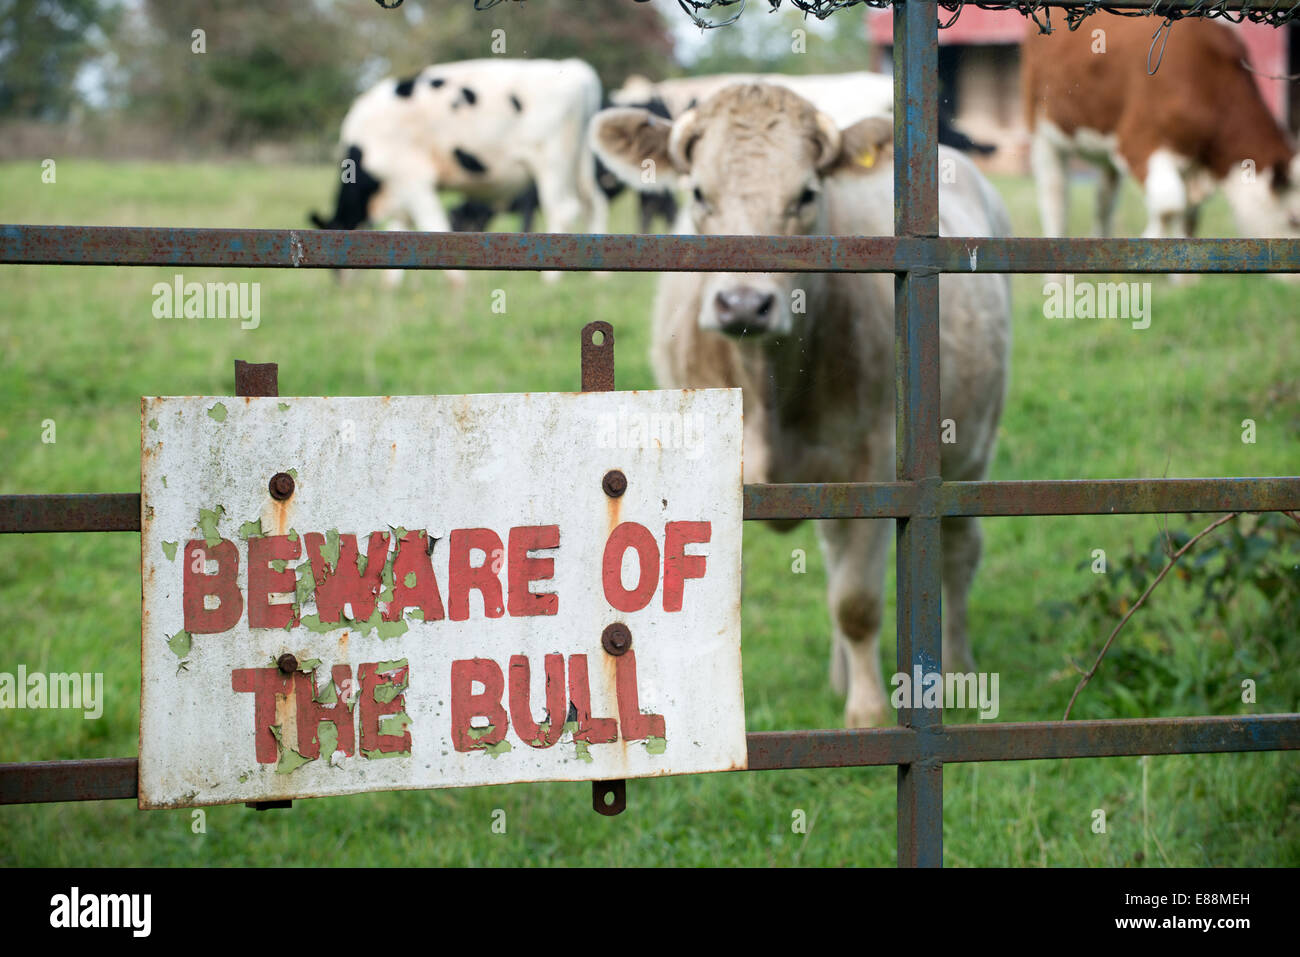 Mantenha Porta Fechada Bull Decalque Advertência Fazenda Animal TouroInterno/externo 